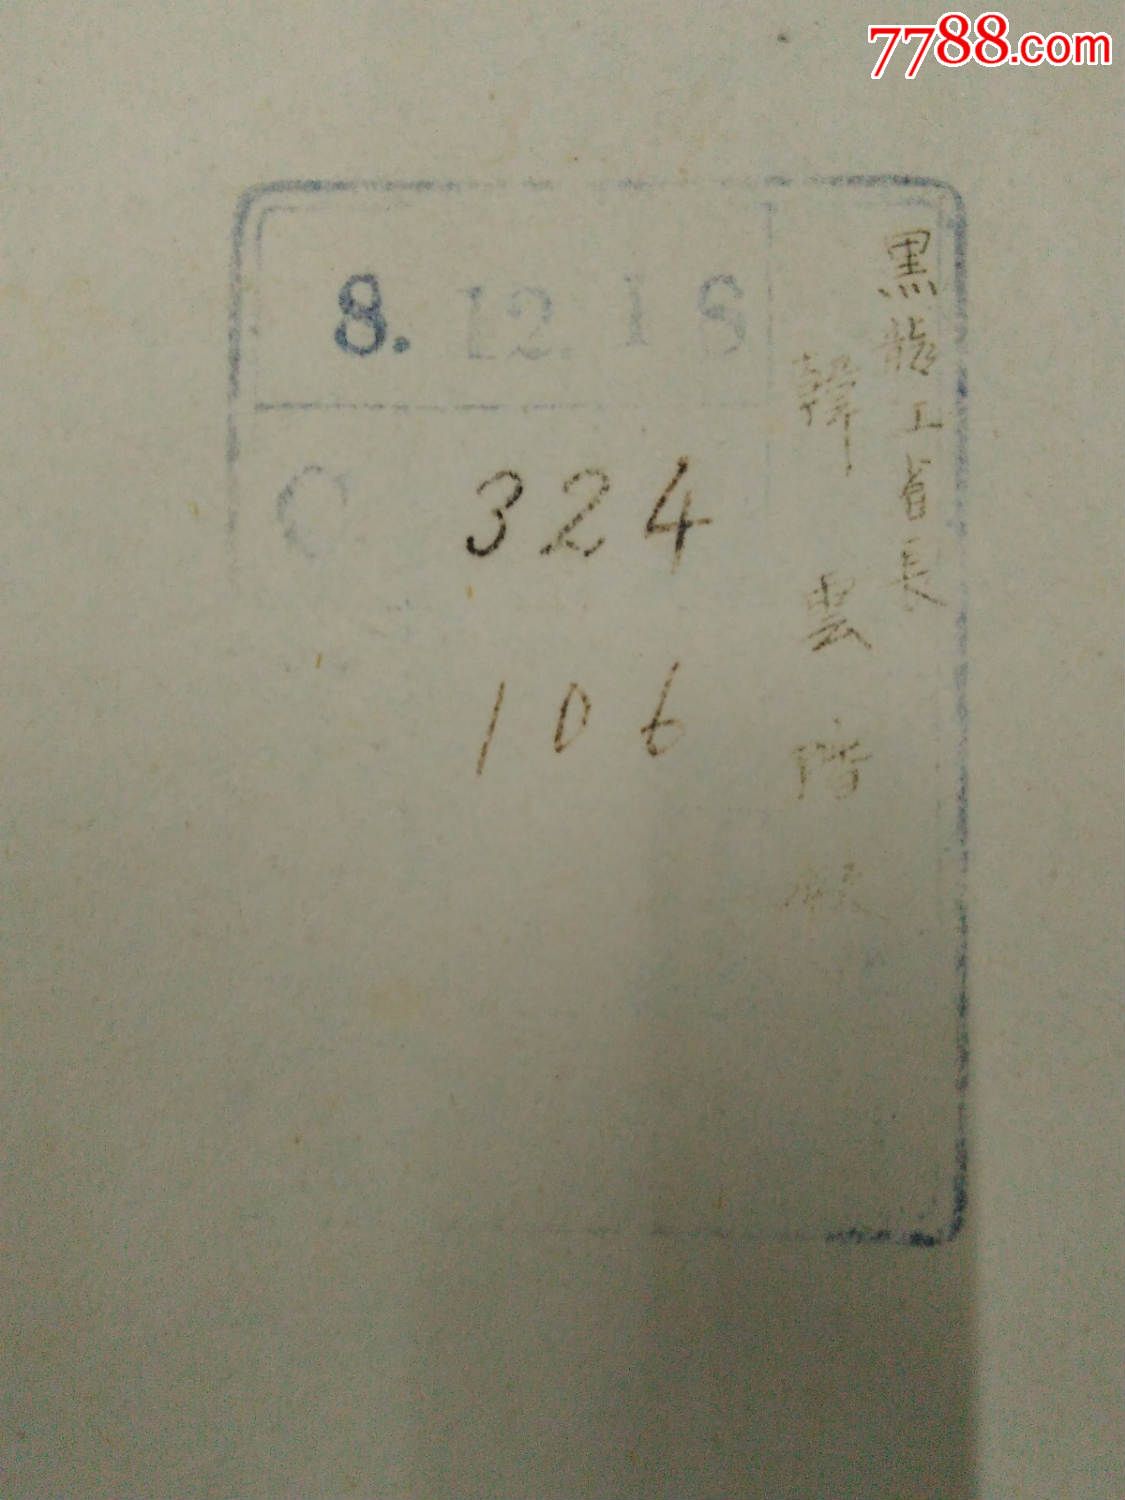 黑龙江省施政大纲三年计划书--韩云阶-价格:88